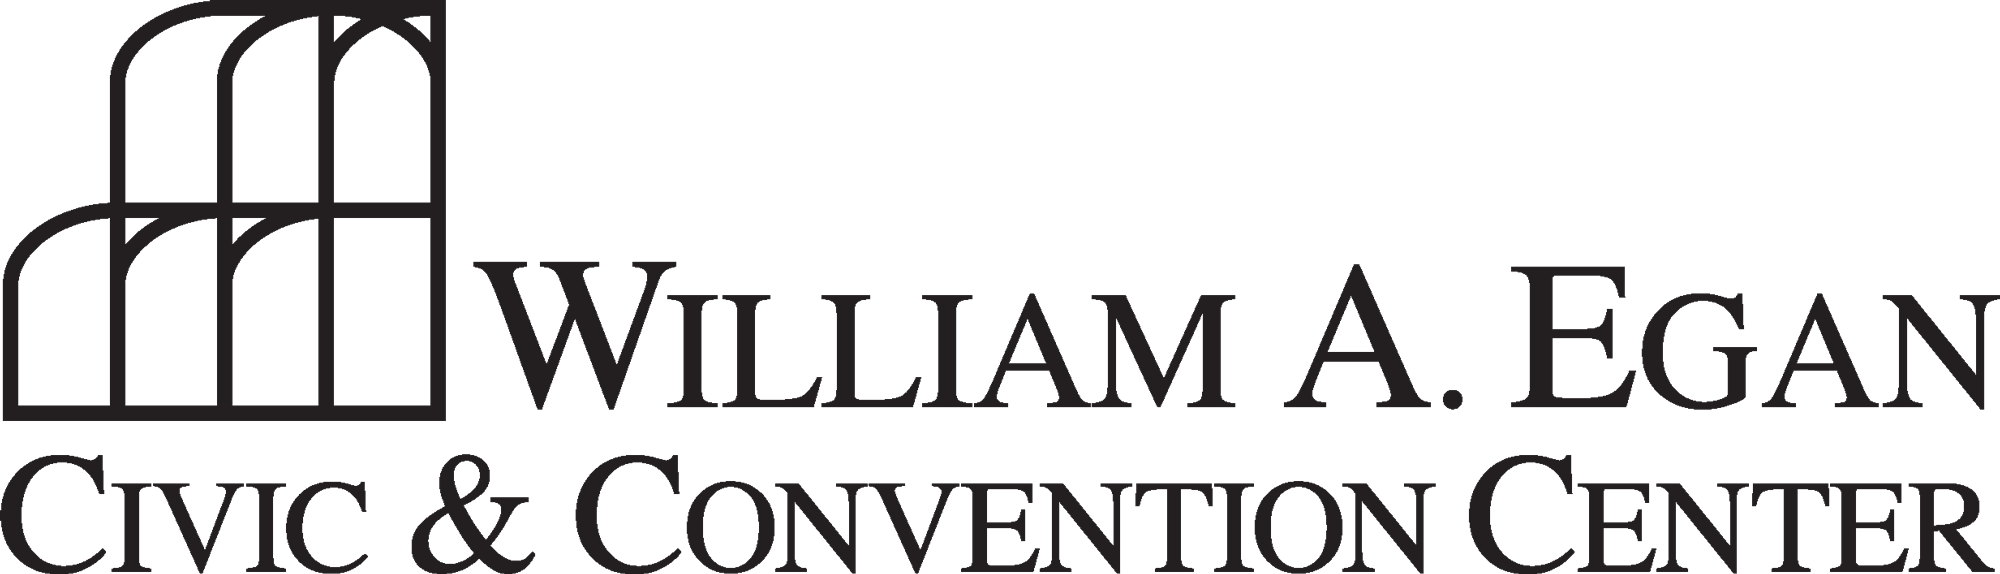 William A. Egan Civic & Convention Center logo